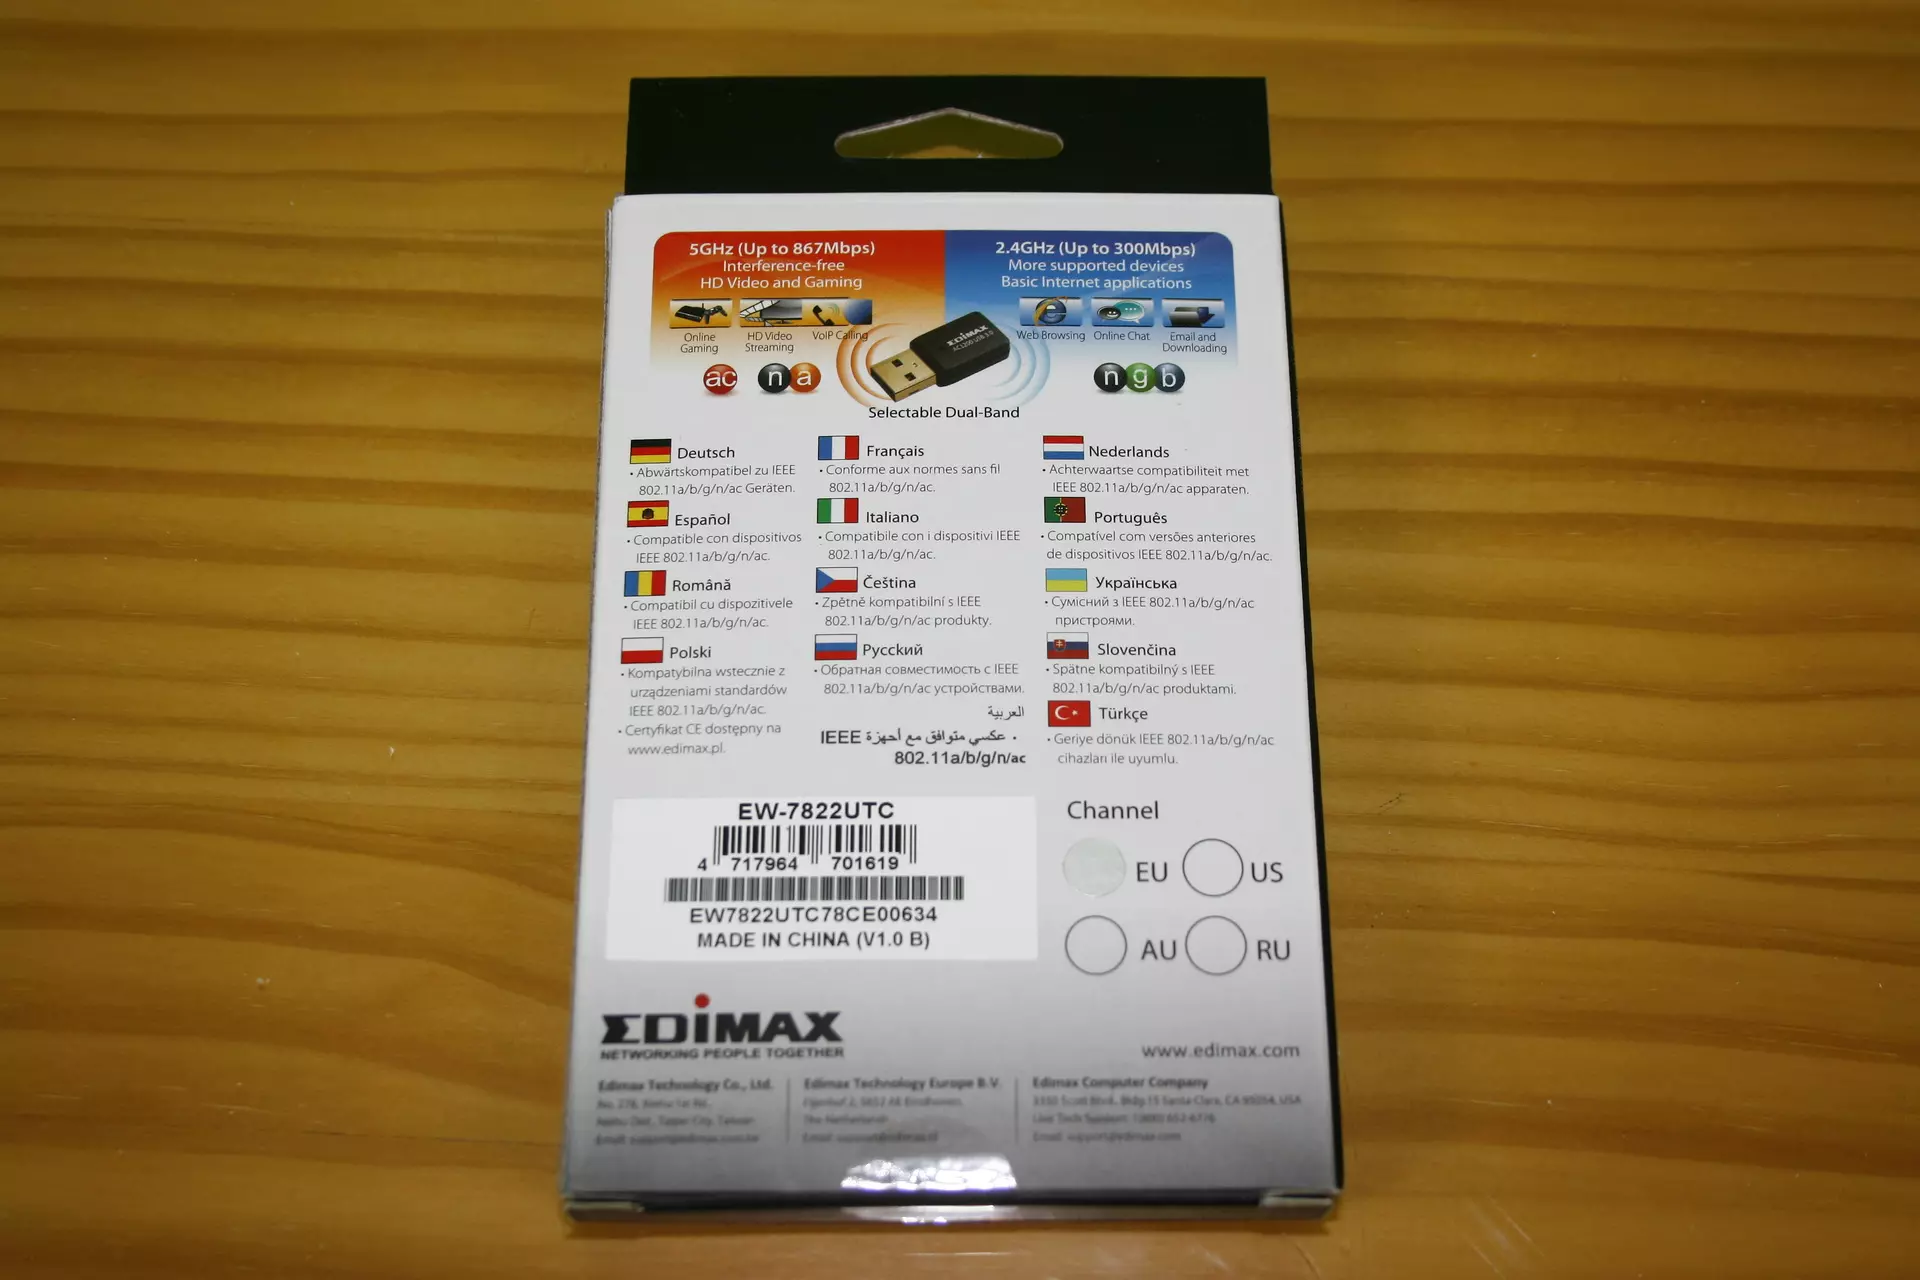 Trasmissione della scheda dell'adattatore Wi-Fi Edimax EW-7822UTC